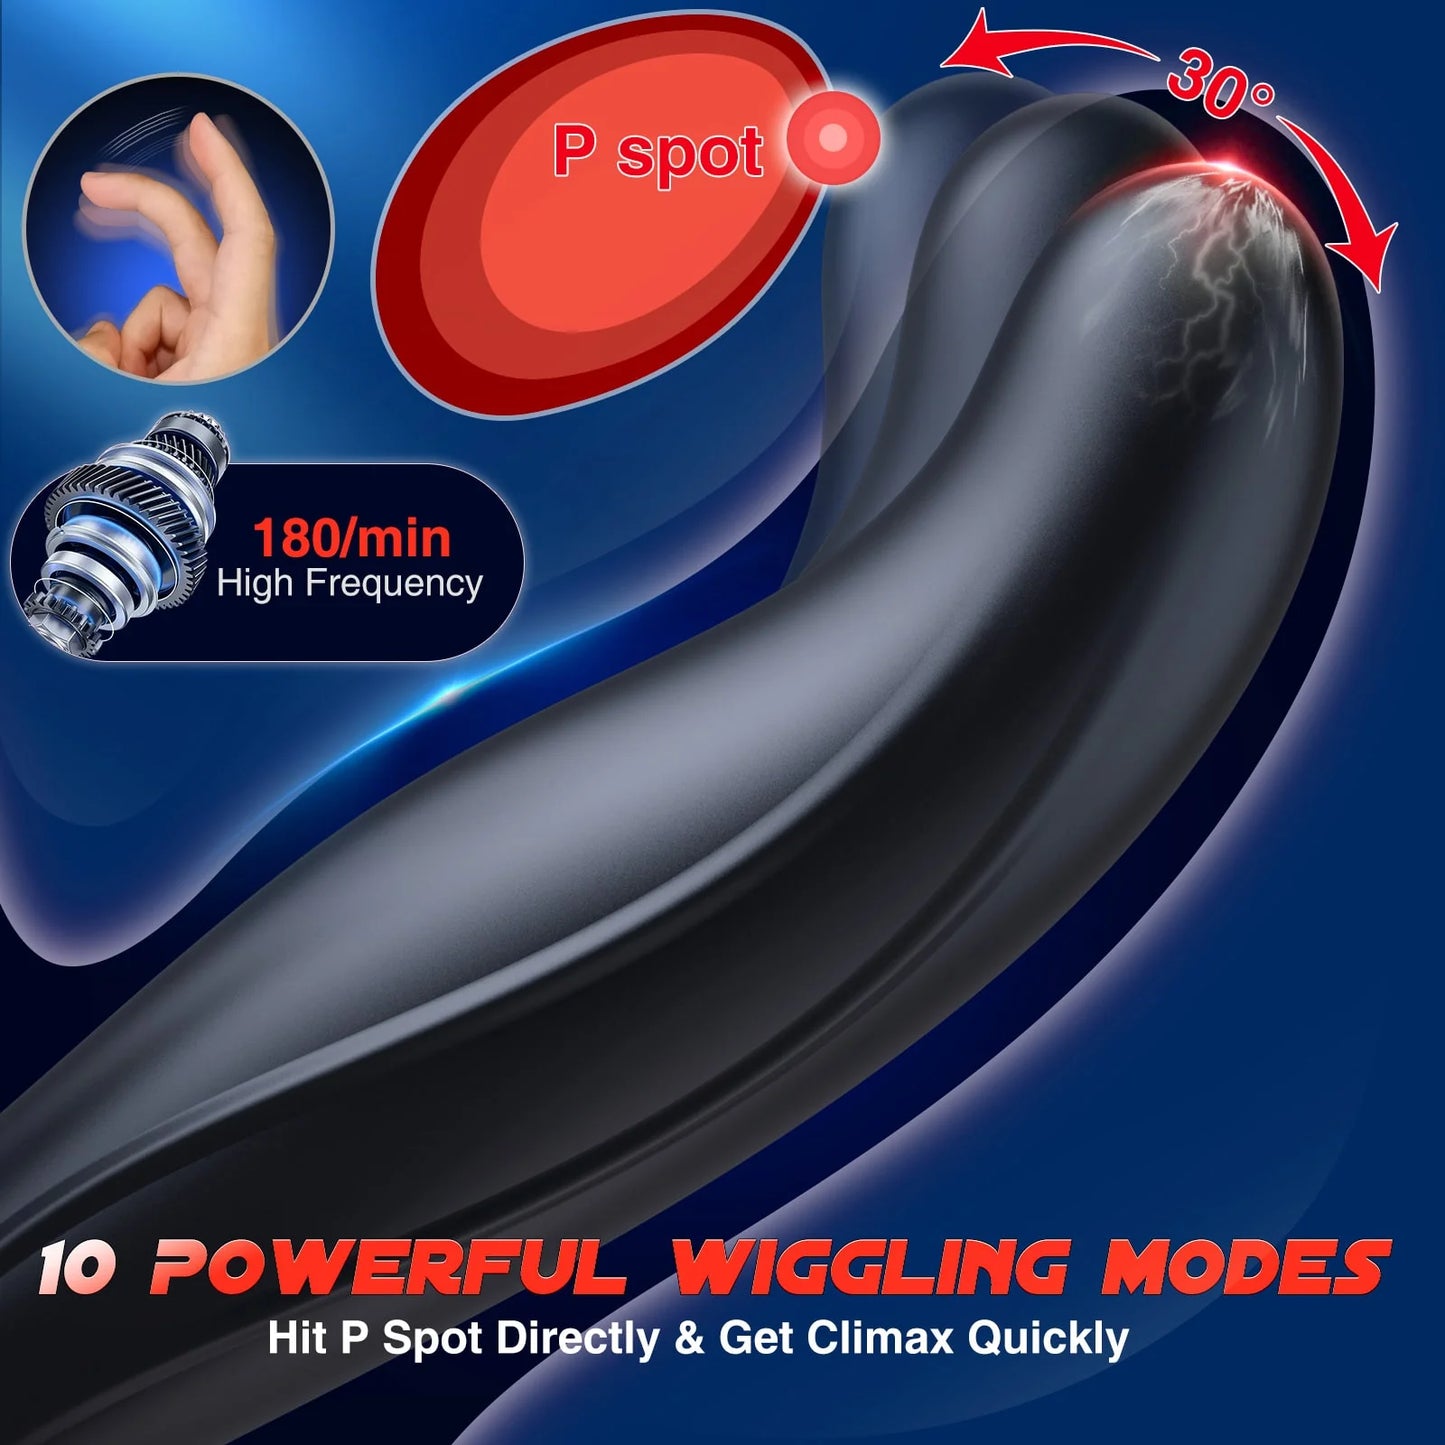 5-in-1 stoßender und vibrierender Analvibrator-Buttplug mit Penisring